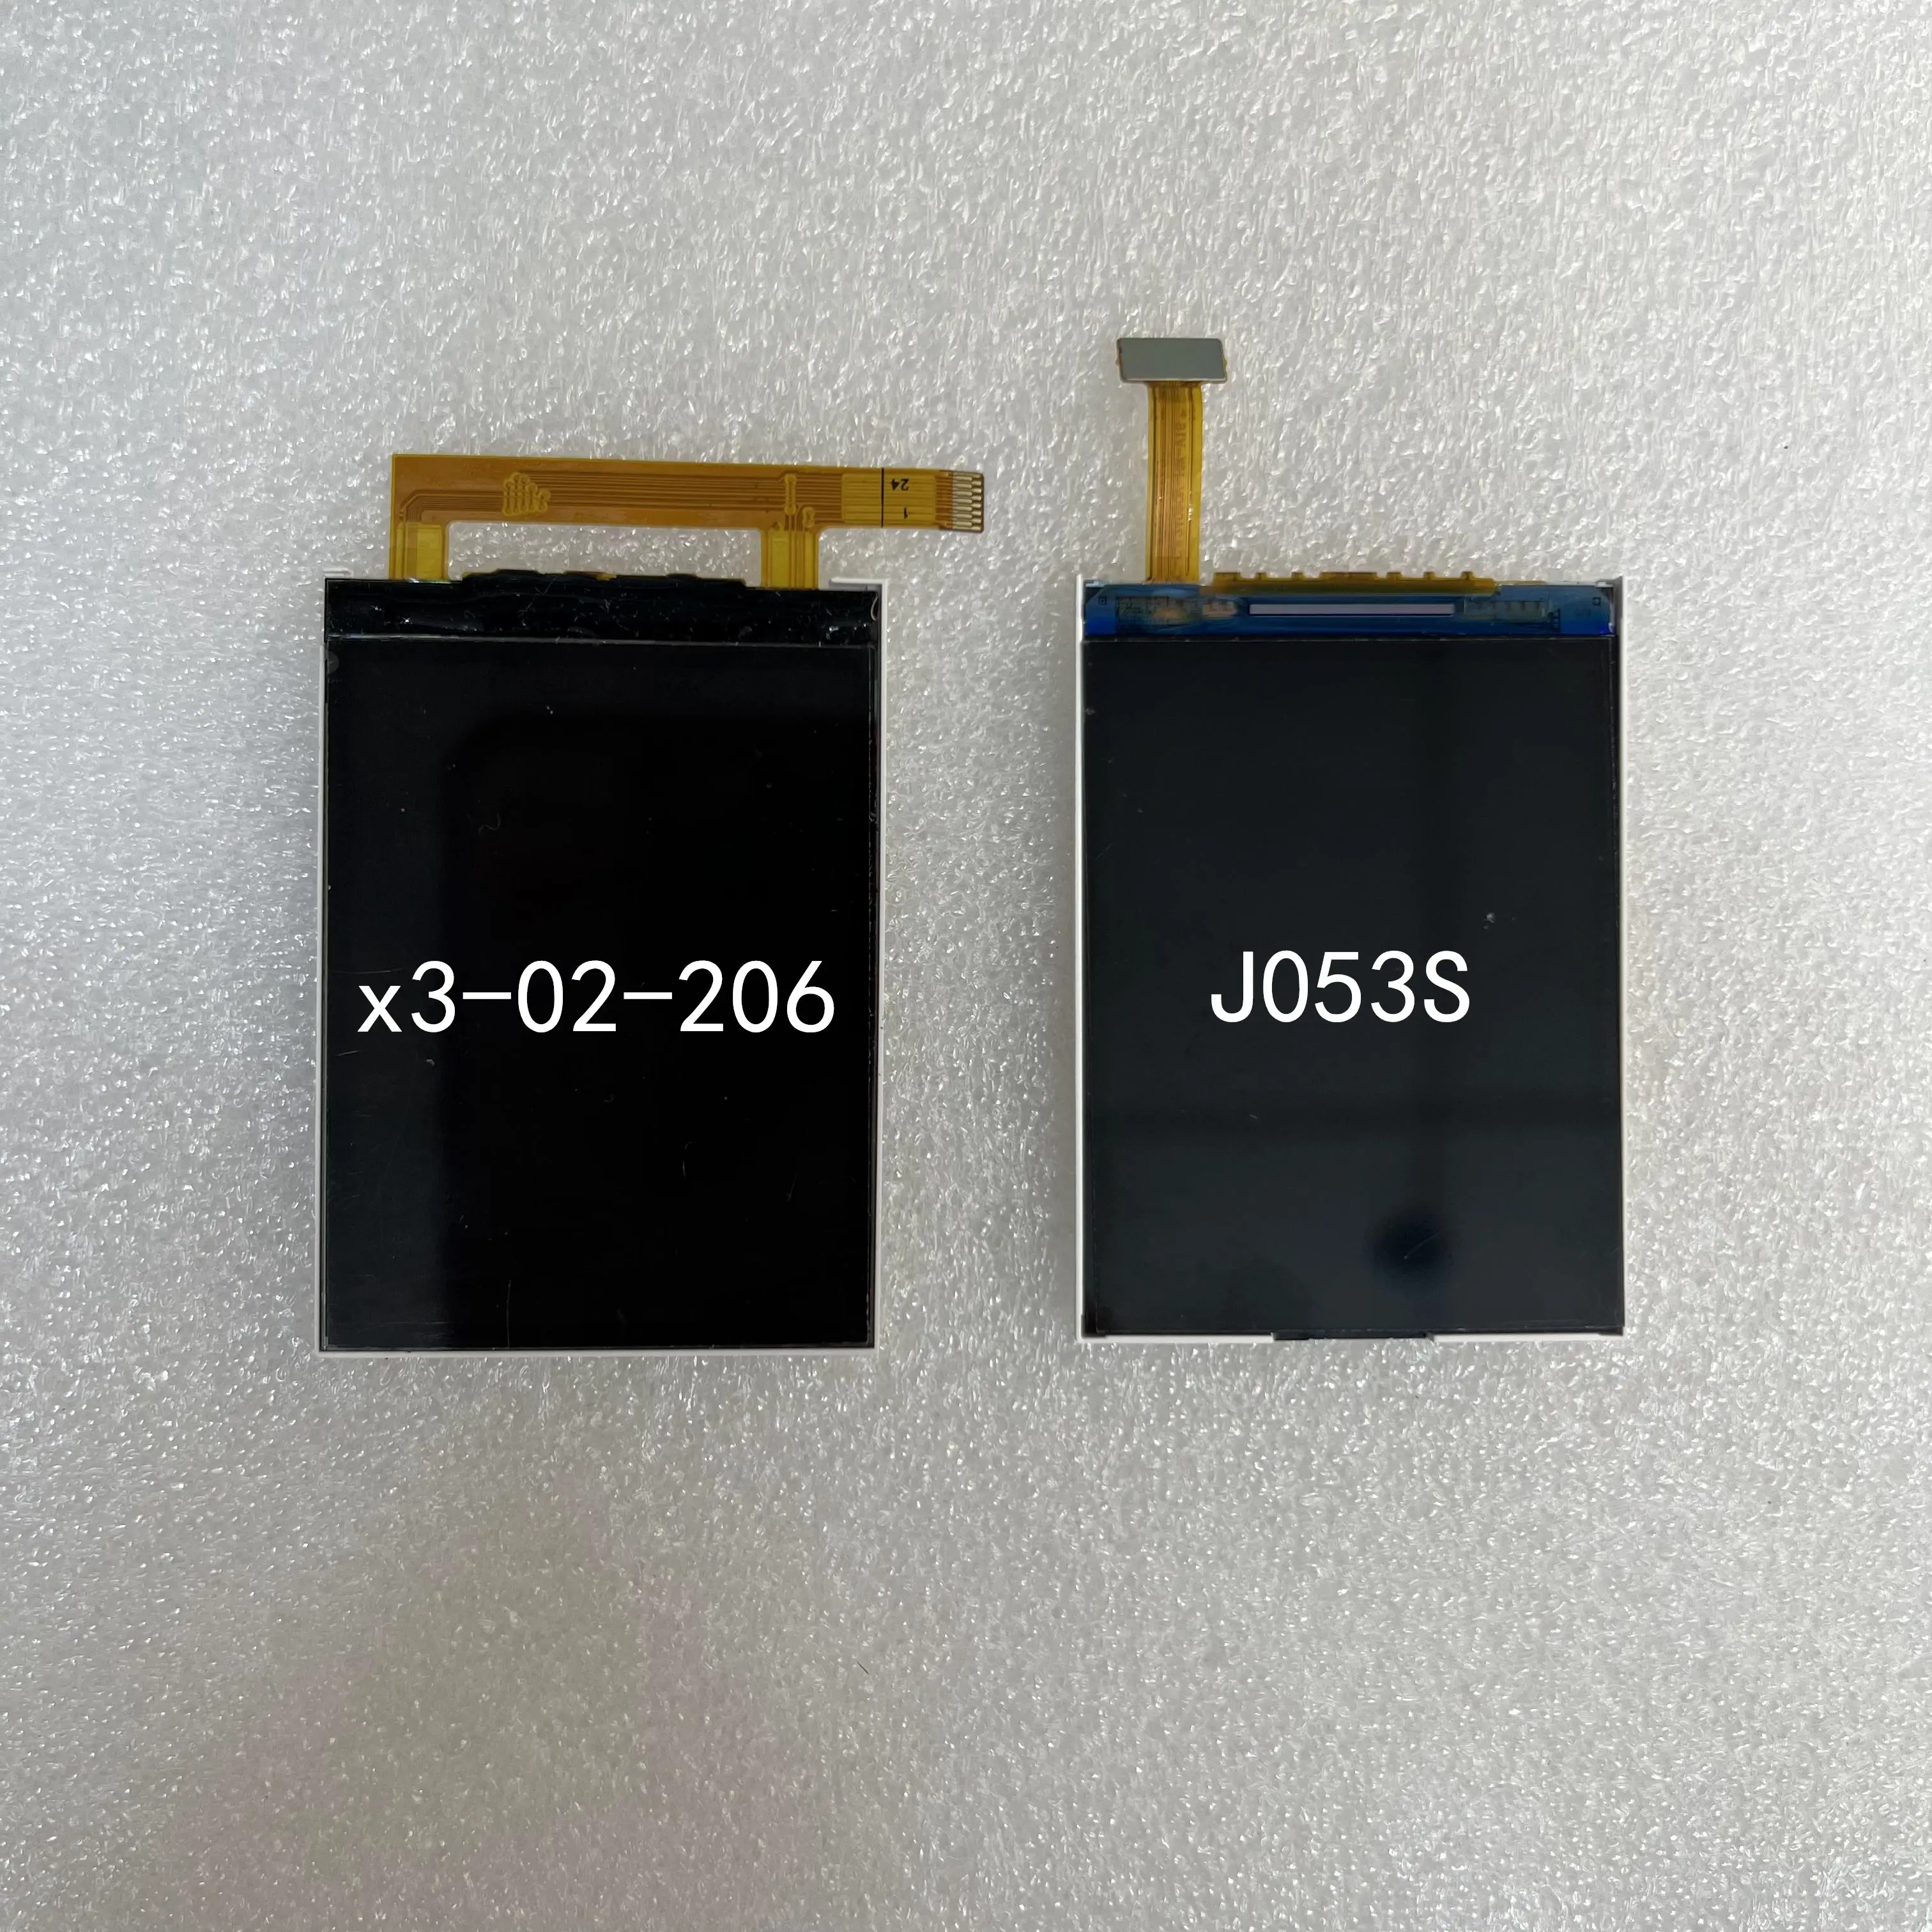 एलसीडी डिस्प्ले मॉडल x3-02-206 मॉडल J053s नोकिया फोन टैफ्ट स्क्रीन मरम्मत भागों